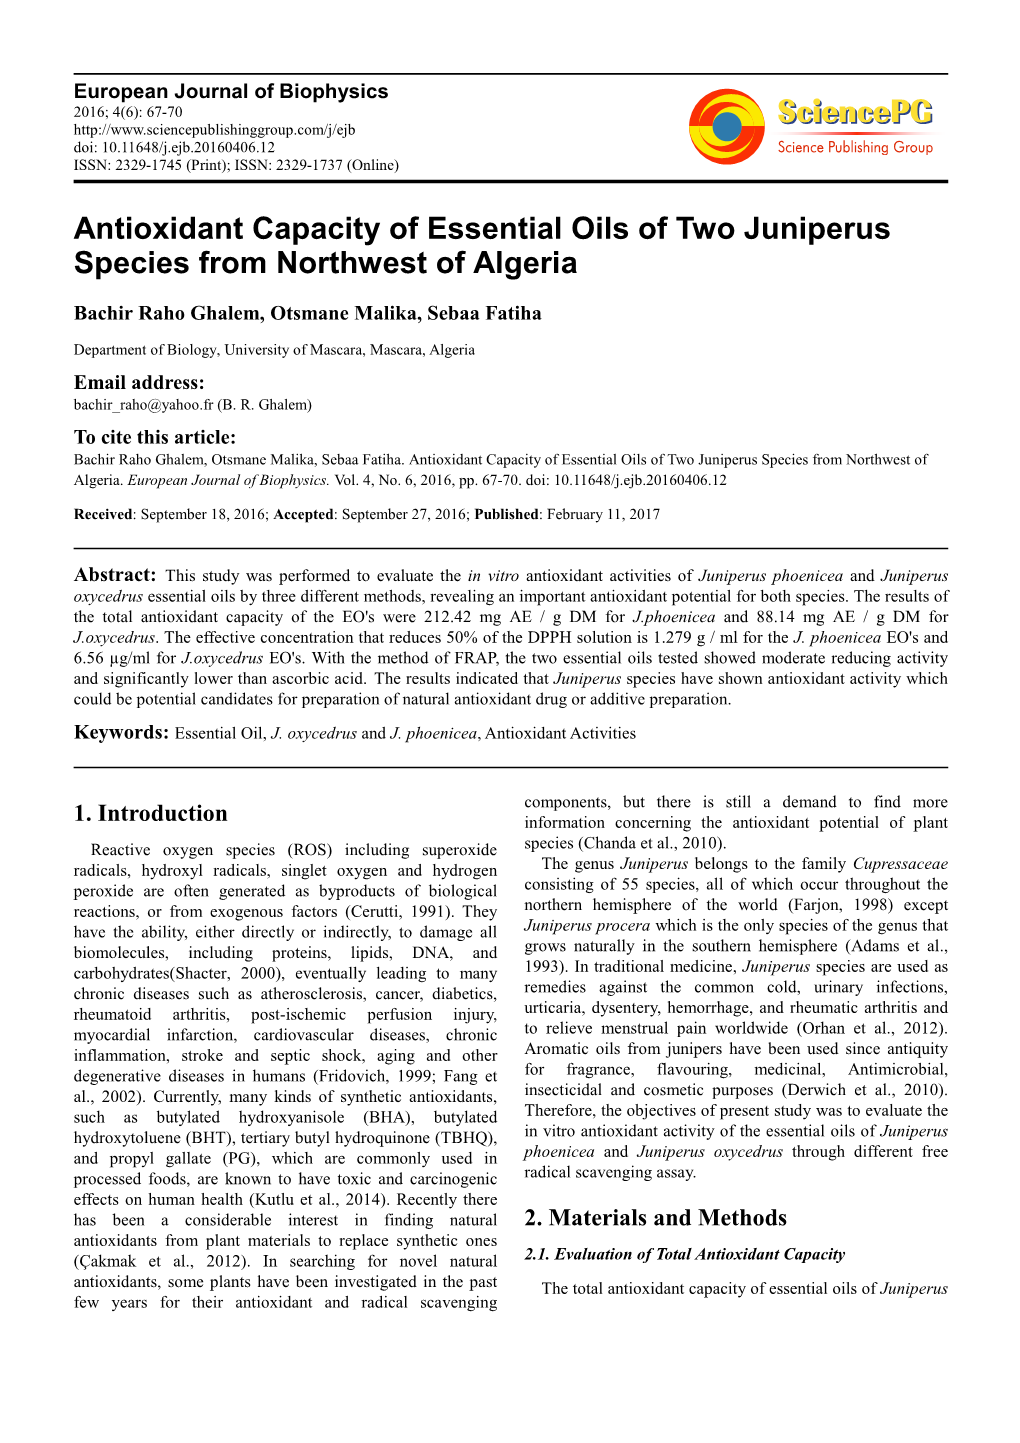 Antioxidant Capacity of Essential Oils of Two Juniperus Species from Northwest of Algeria